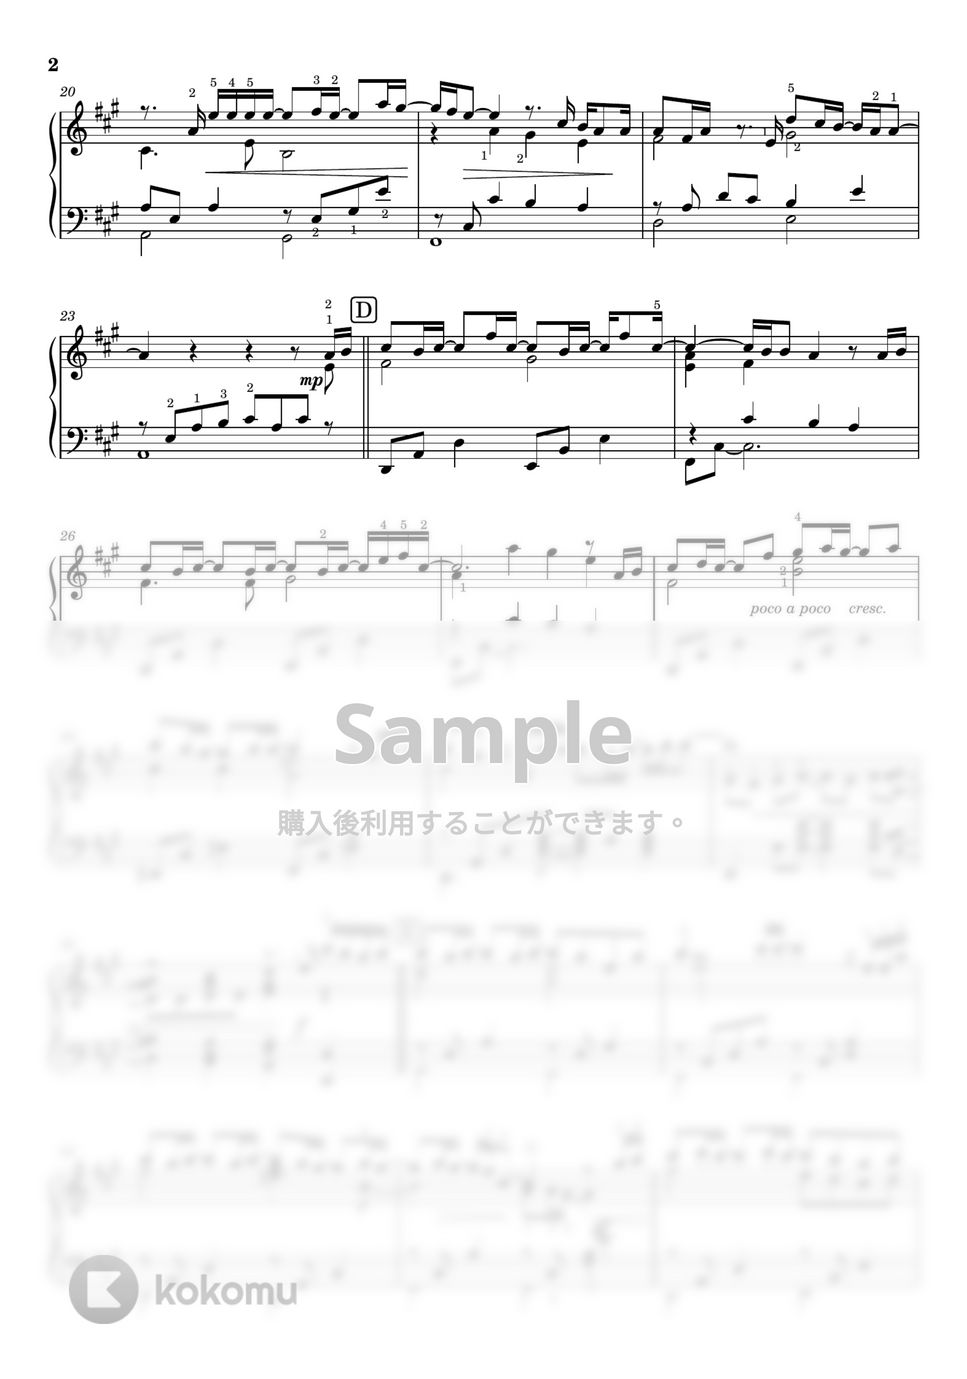 Uru - ファーストラヴ《ピアノソロ 上級》 (ピアノソロ上級 /ファーストラヴ主題歌/ 運指付き) by 三葛朋子(T.Mikatsura)